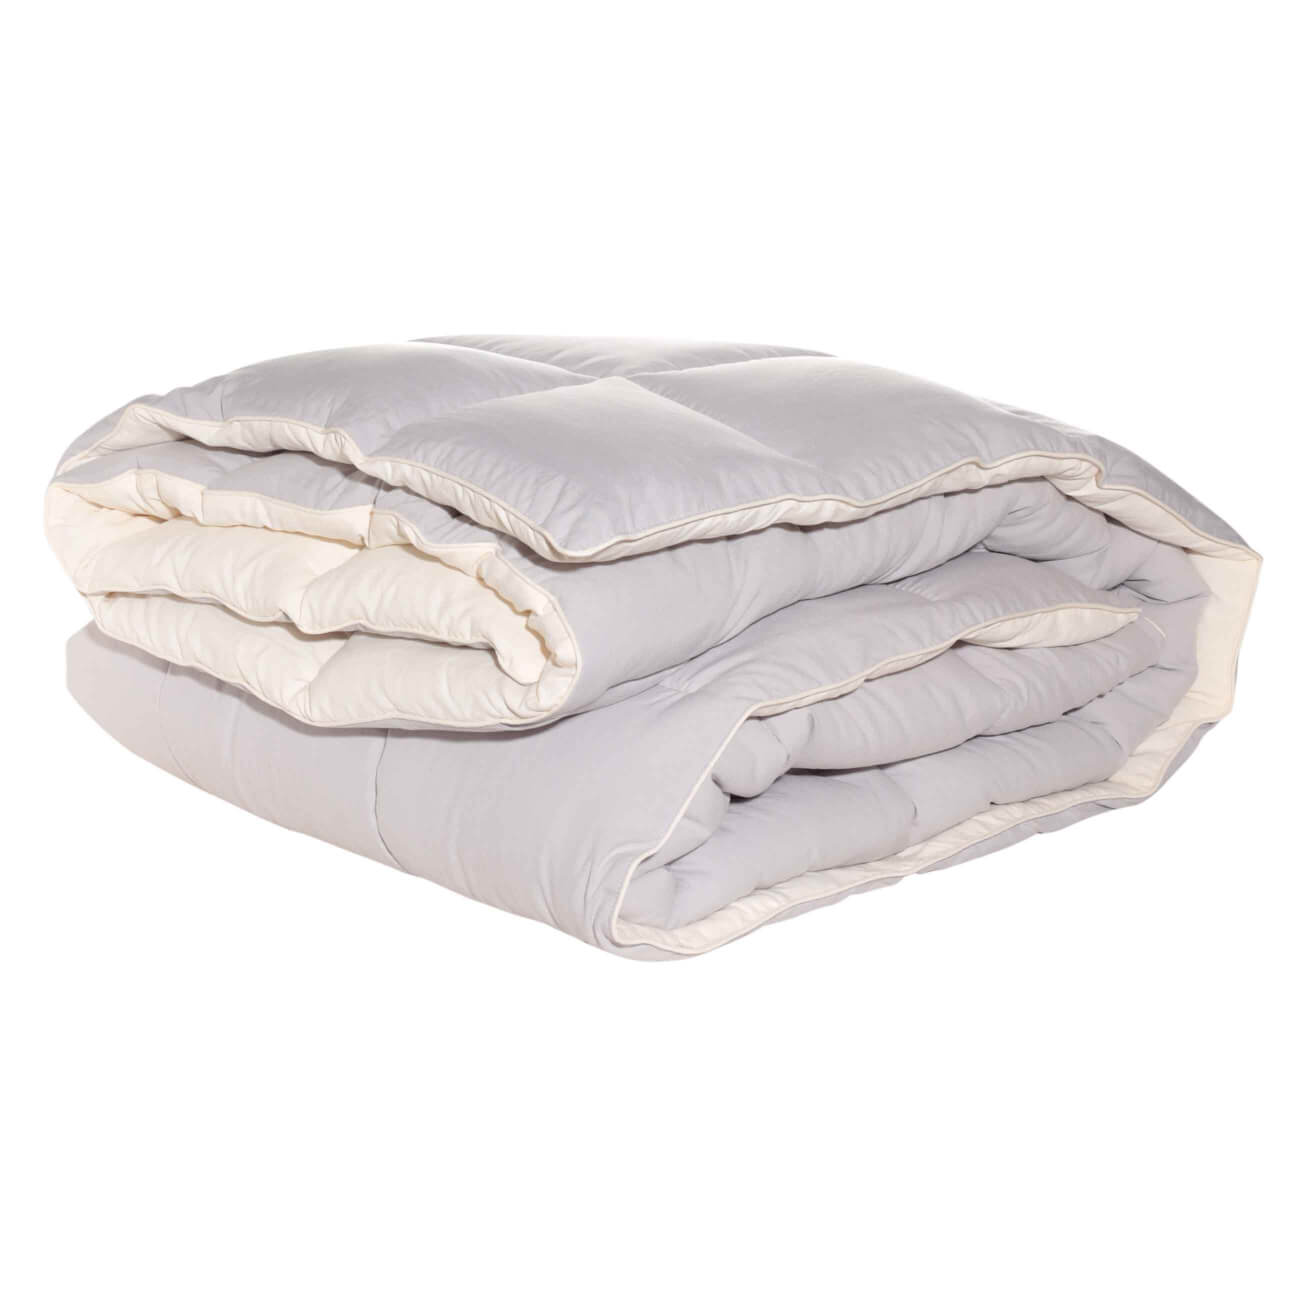 Одеяло, 140х200 см, микрофибра/холлофайбер, бежевое/молочное, Hollow fiber одеяло 140х200 см микрофибра simply soft